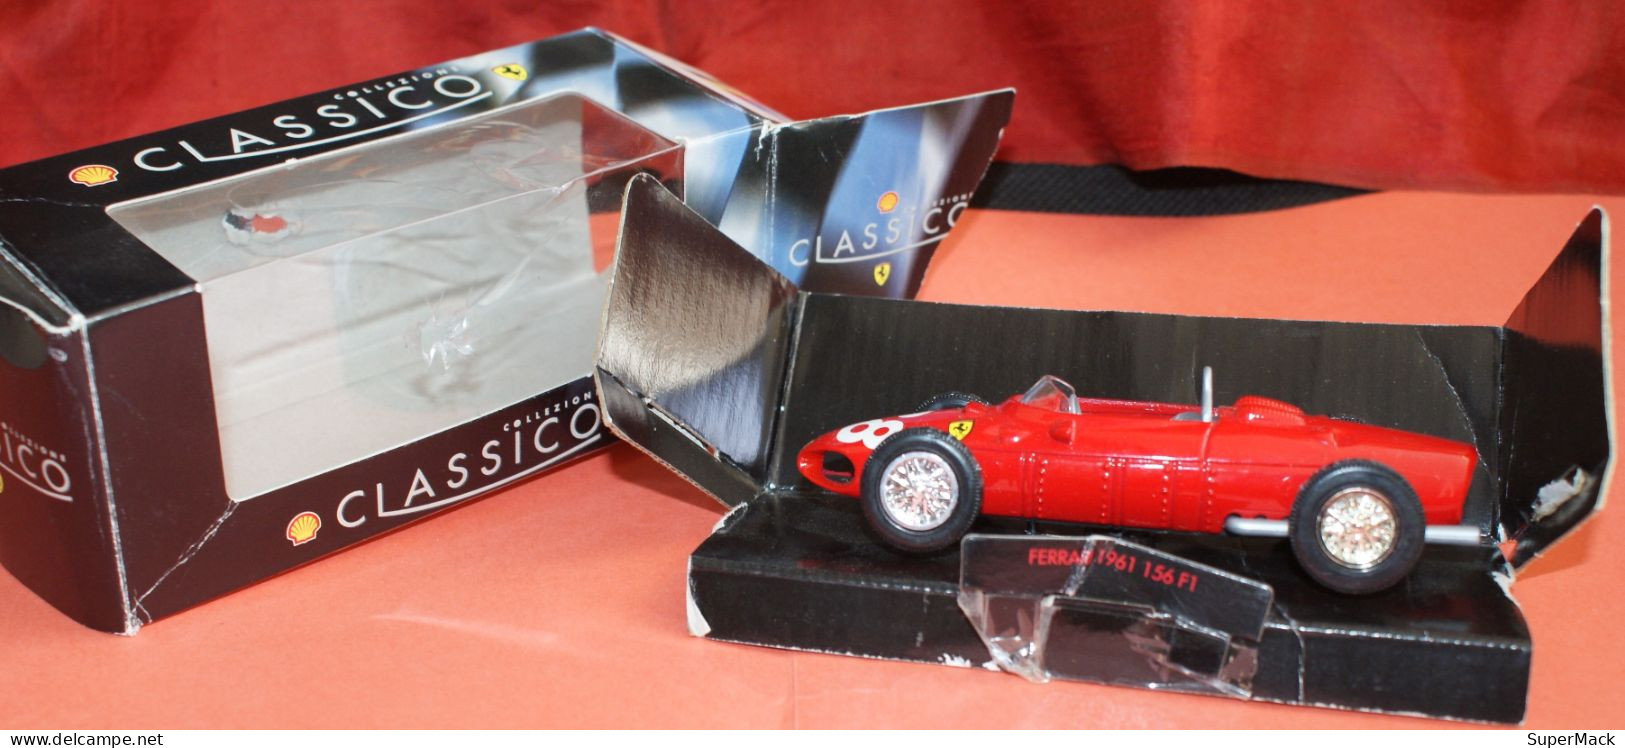 SHELL Classico Collezione - Ferrari 1961 156 F1 - Echelle 1:35 ### NEUVE ### - Echelle 1:32